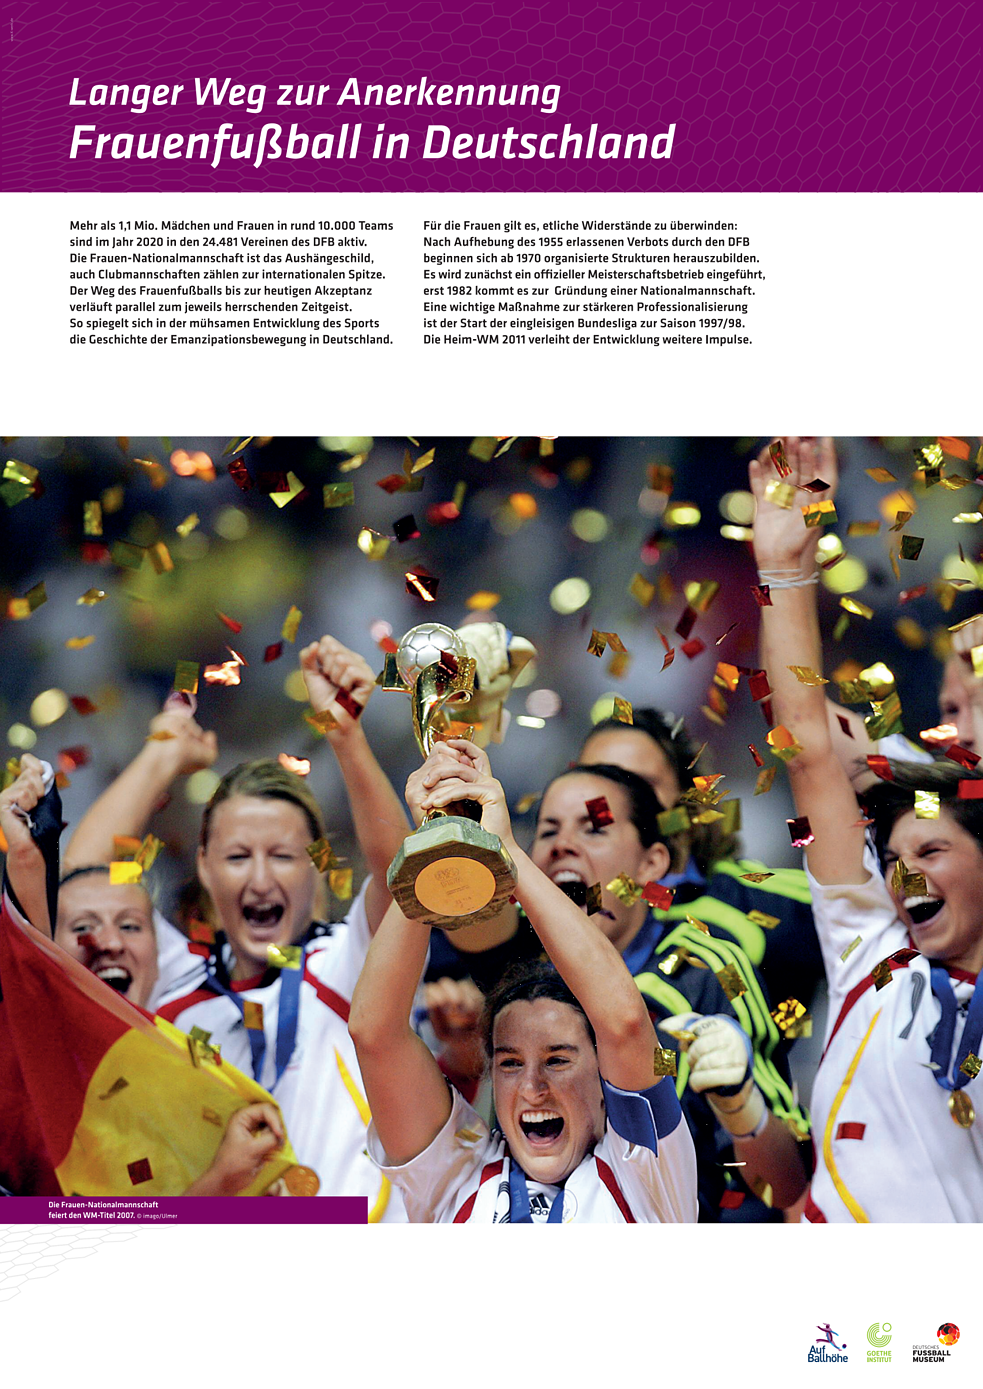 Poster tentang perkembangan sepak bola wanita di Jerman